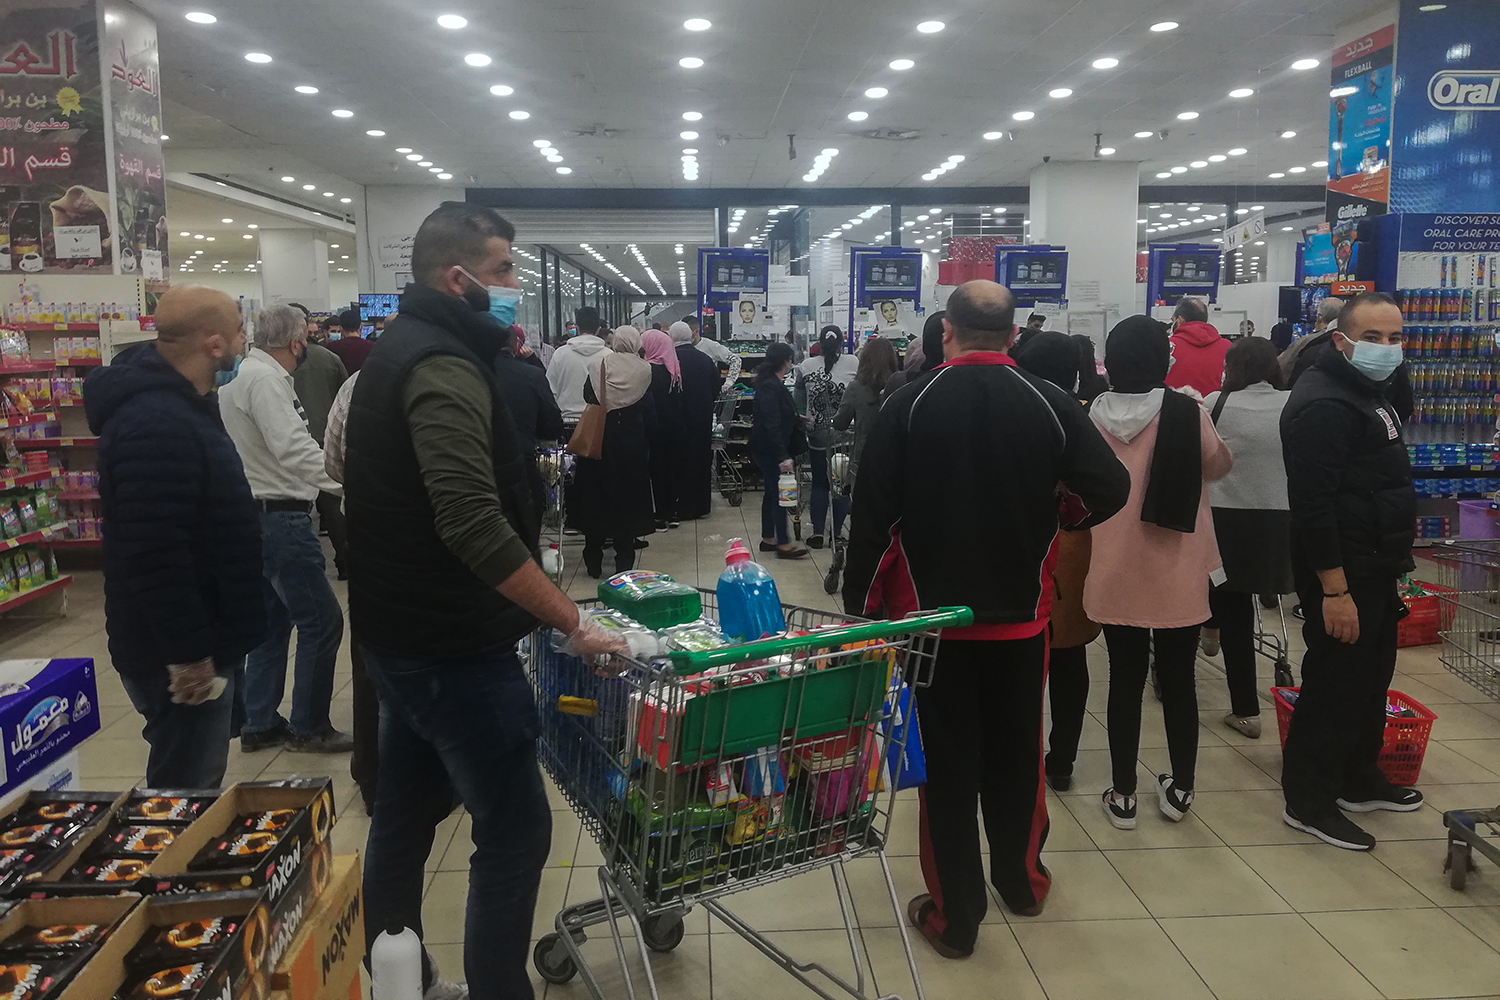 Durant trois jours, les supermarchés sont pris d’assaut par les habitants. Le gouvernement l’a annoncé : les supermarchés seront fermés © Globe Reporters